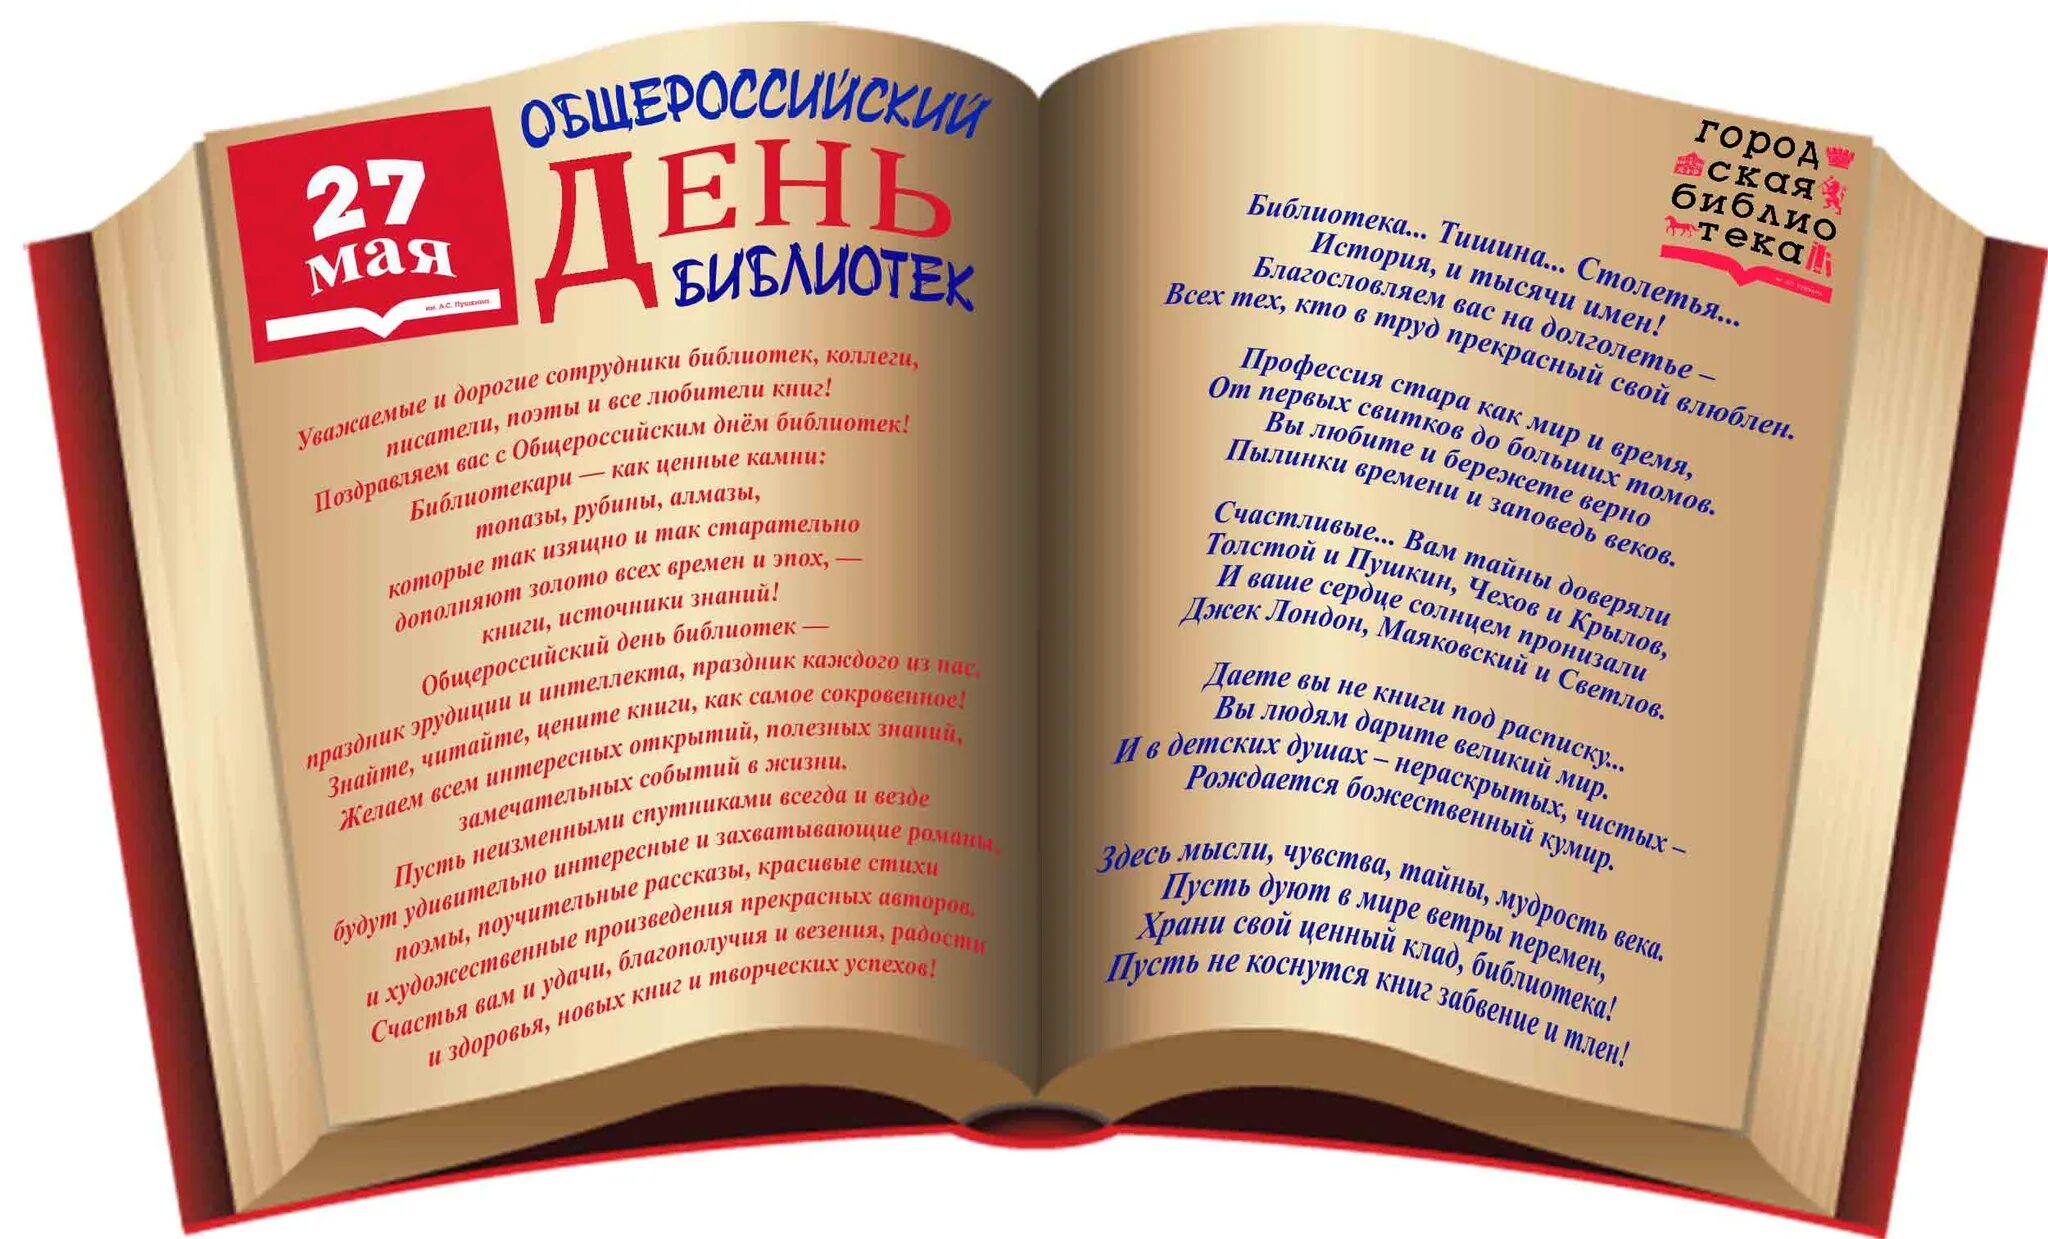 27 мая день праздники. С днем библиотек. День библиотекаря. Всероссийский день библиотек. Поздравление с днем библиотек.